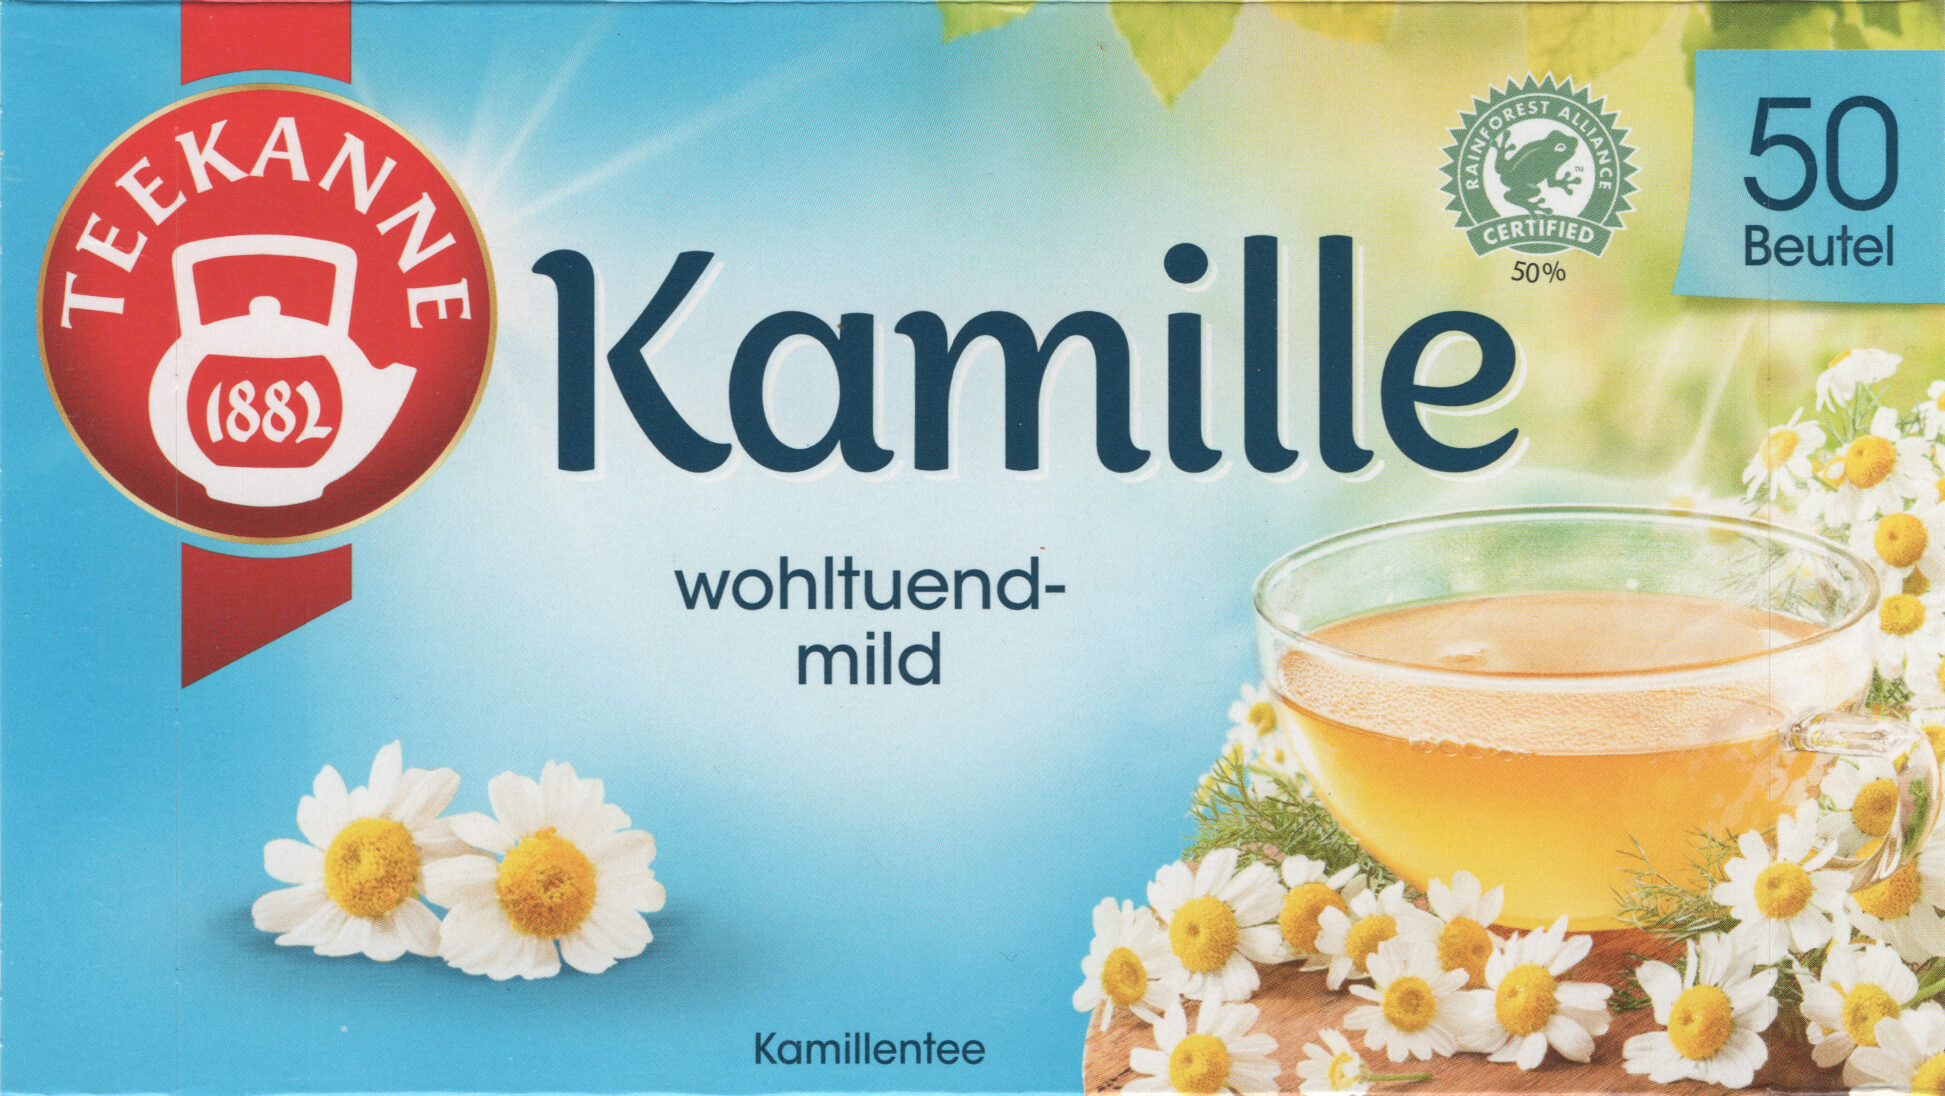 Kamille1 3,39 - Product - de